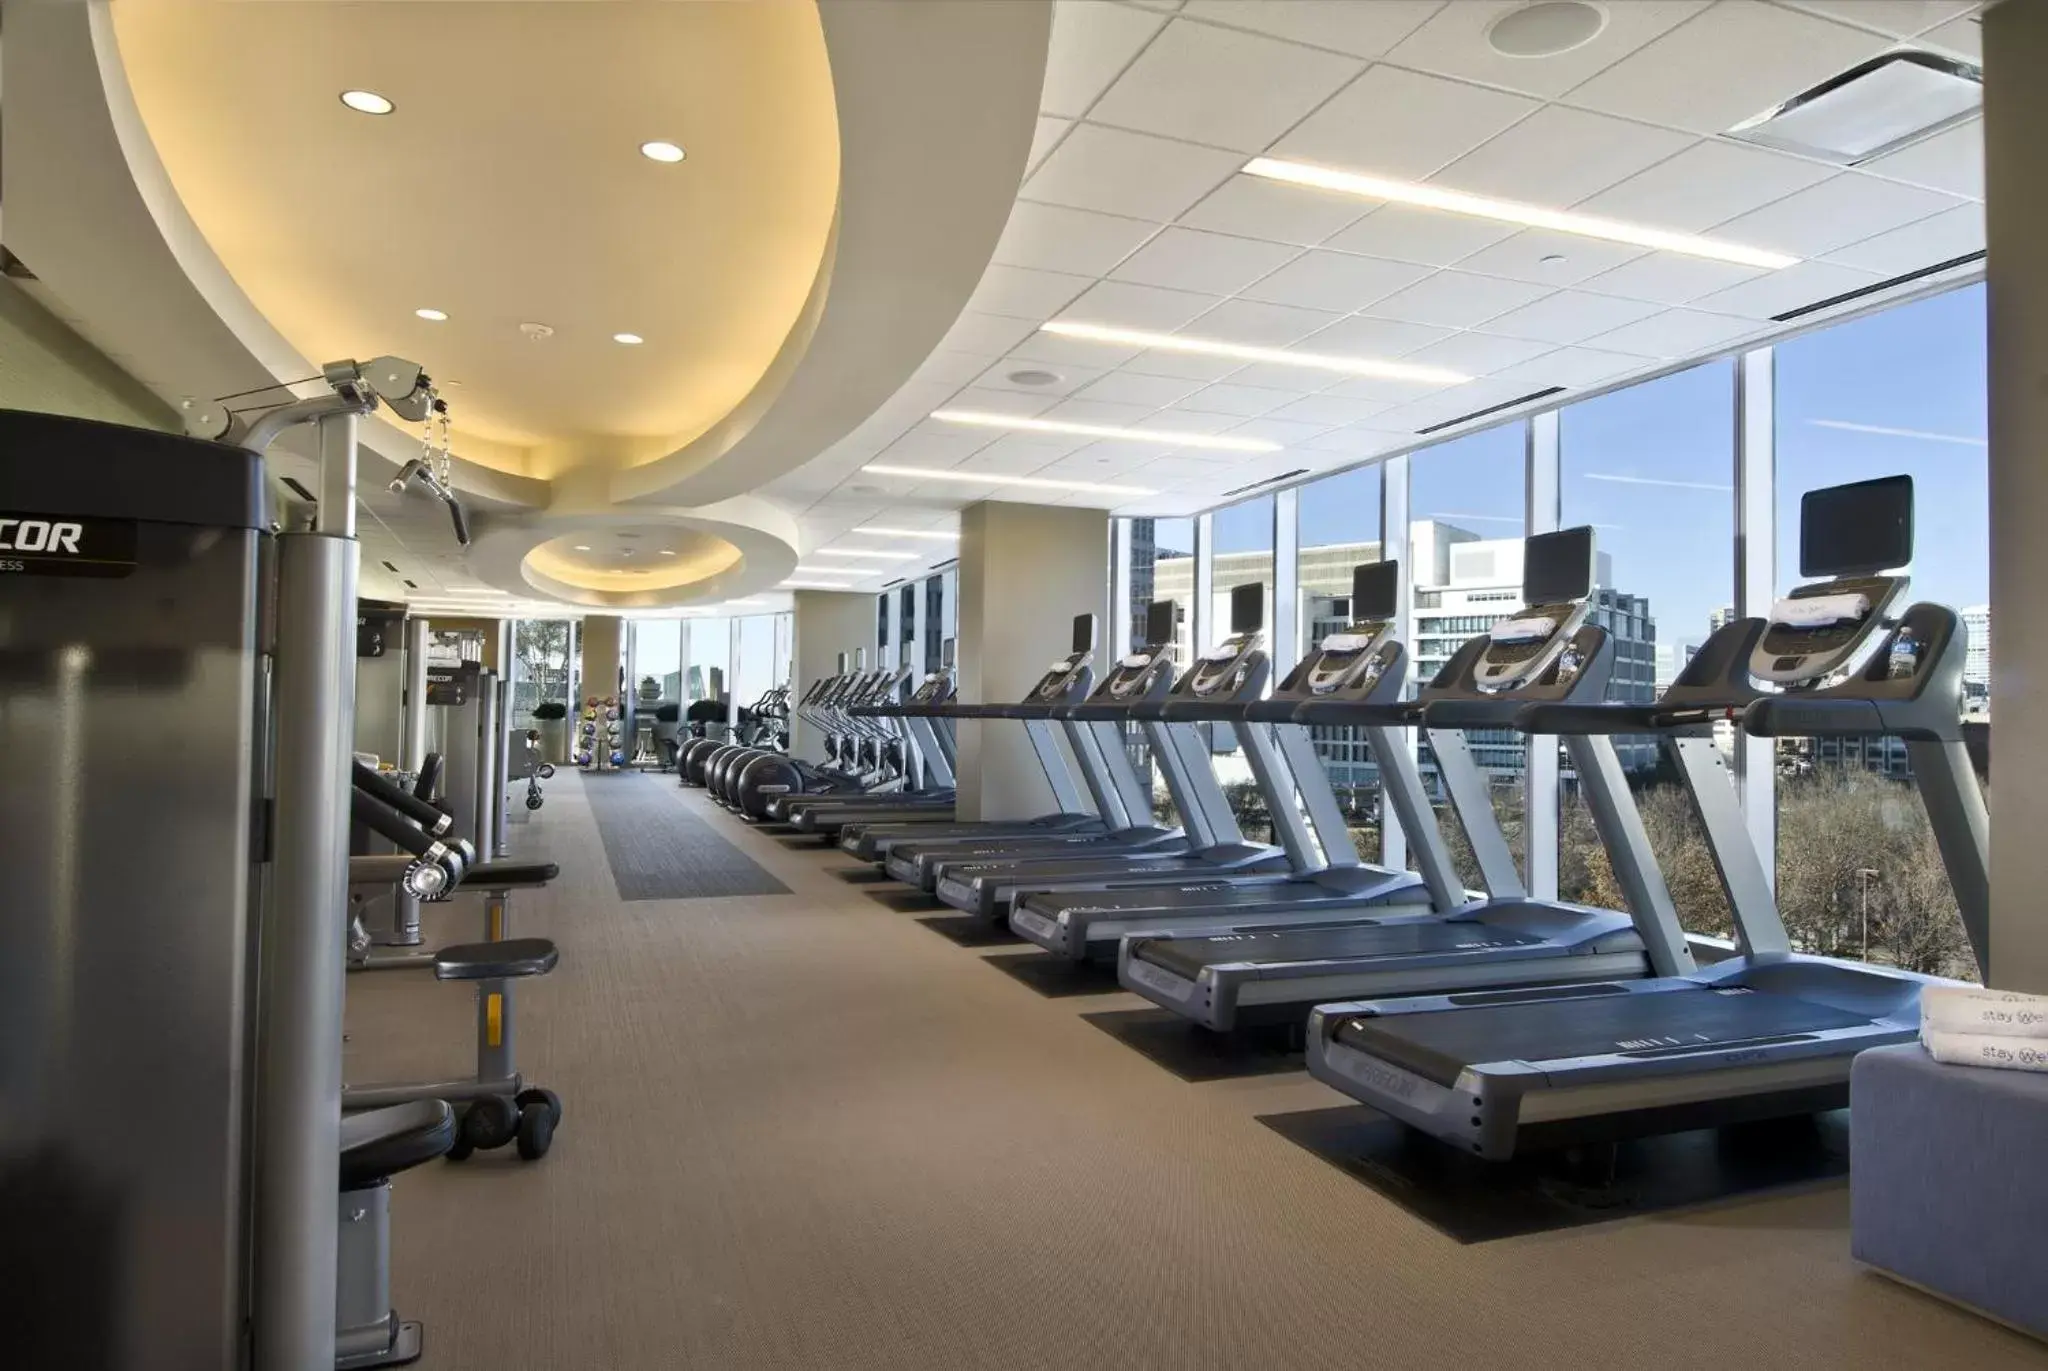 Fitness centre/facilities, Fitness Center/Facilities in Omni Dallas Hotel